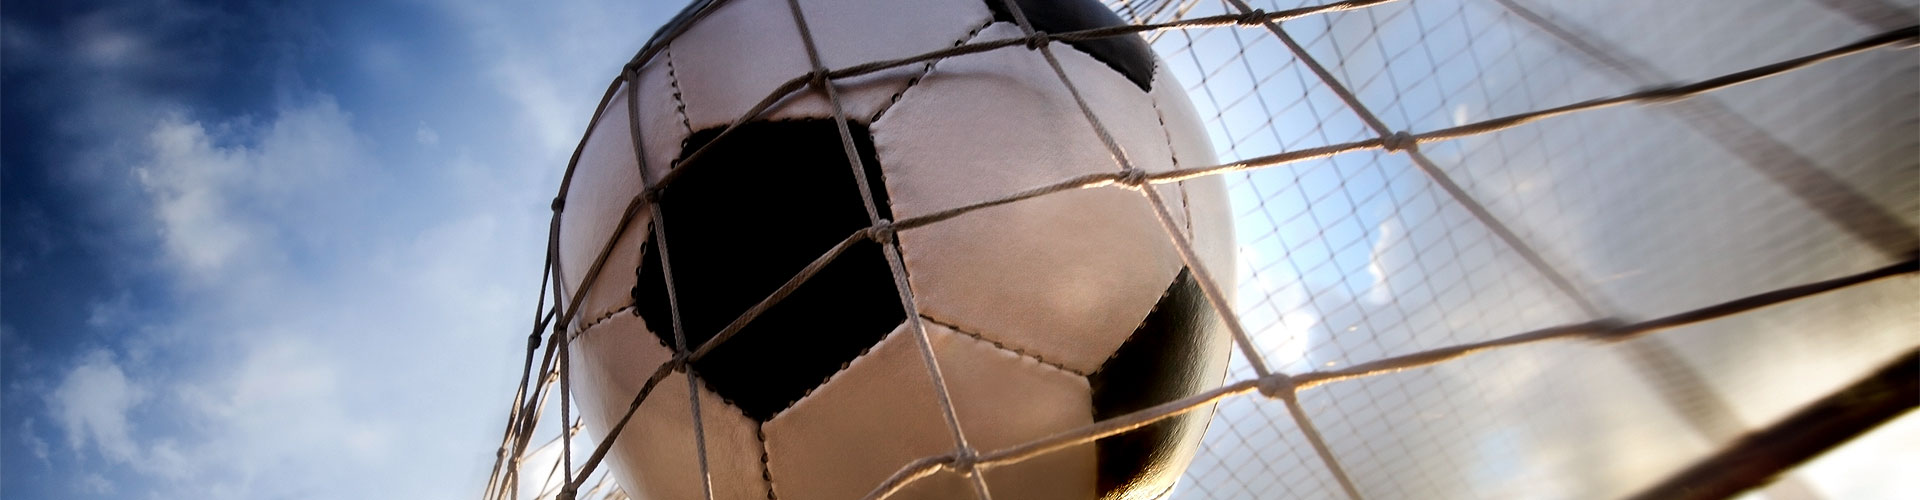 Ver la Eurocopa 2020 de fútbol en vivo en Ferreira